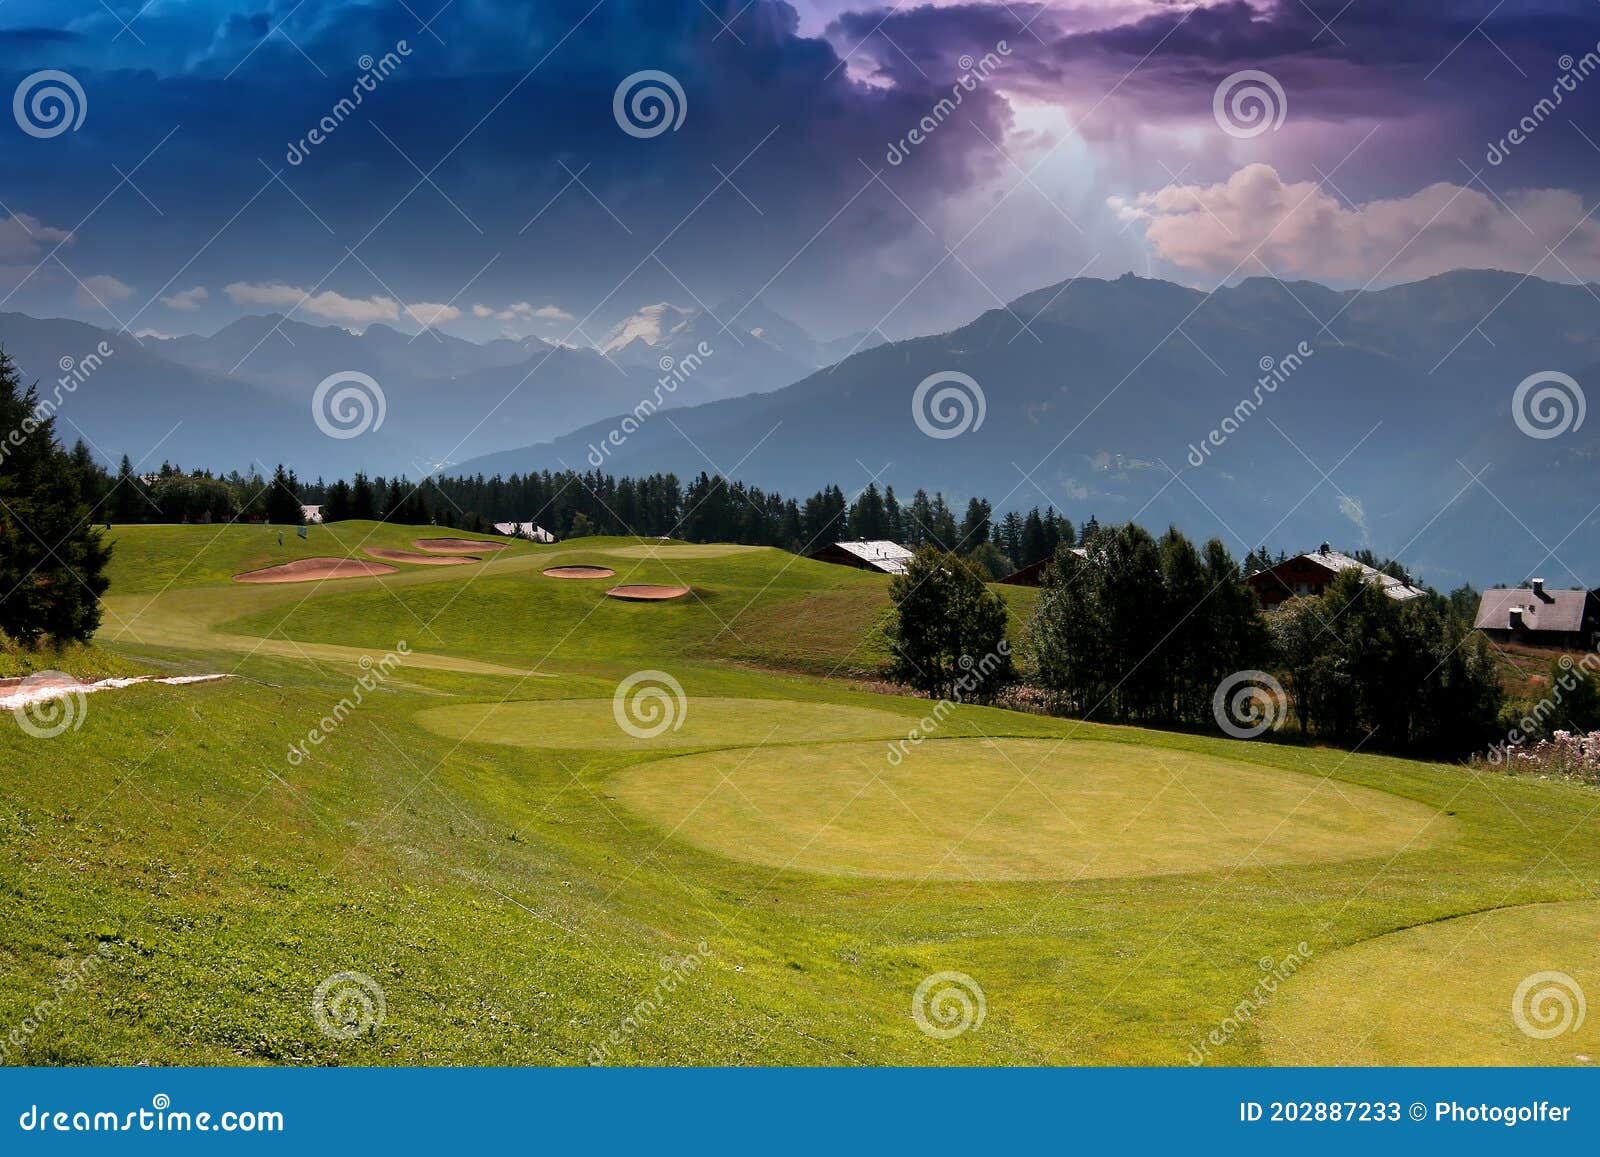 mountain golf course in crans-montana